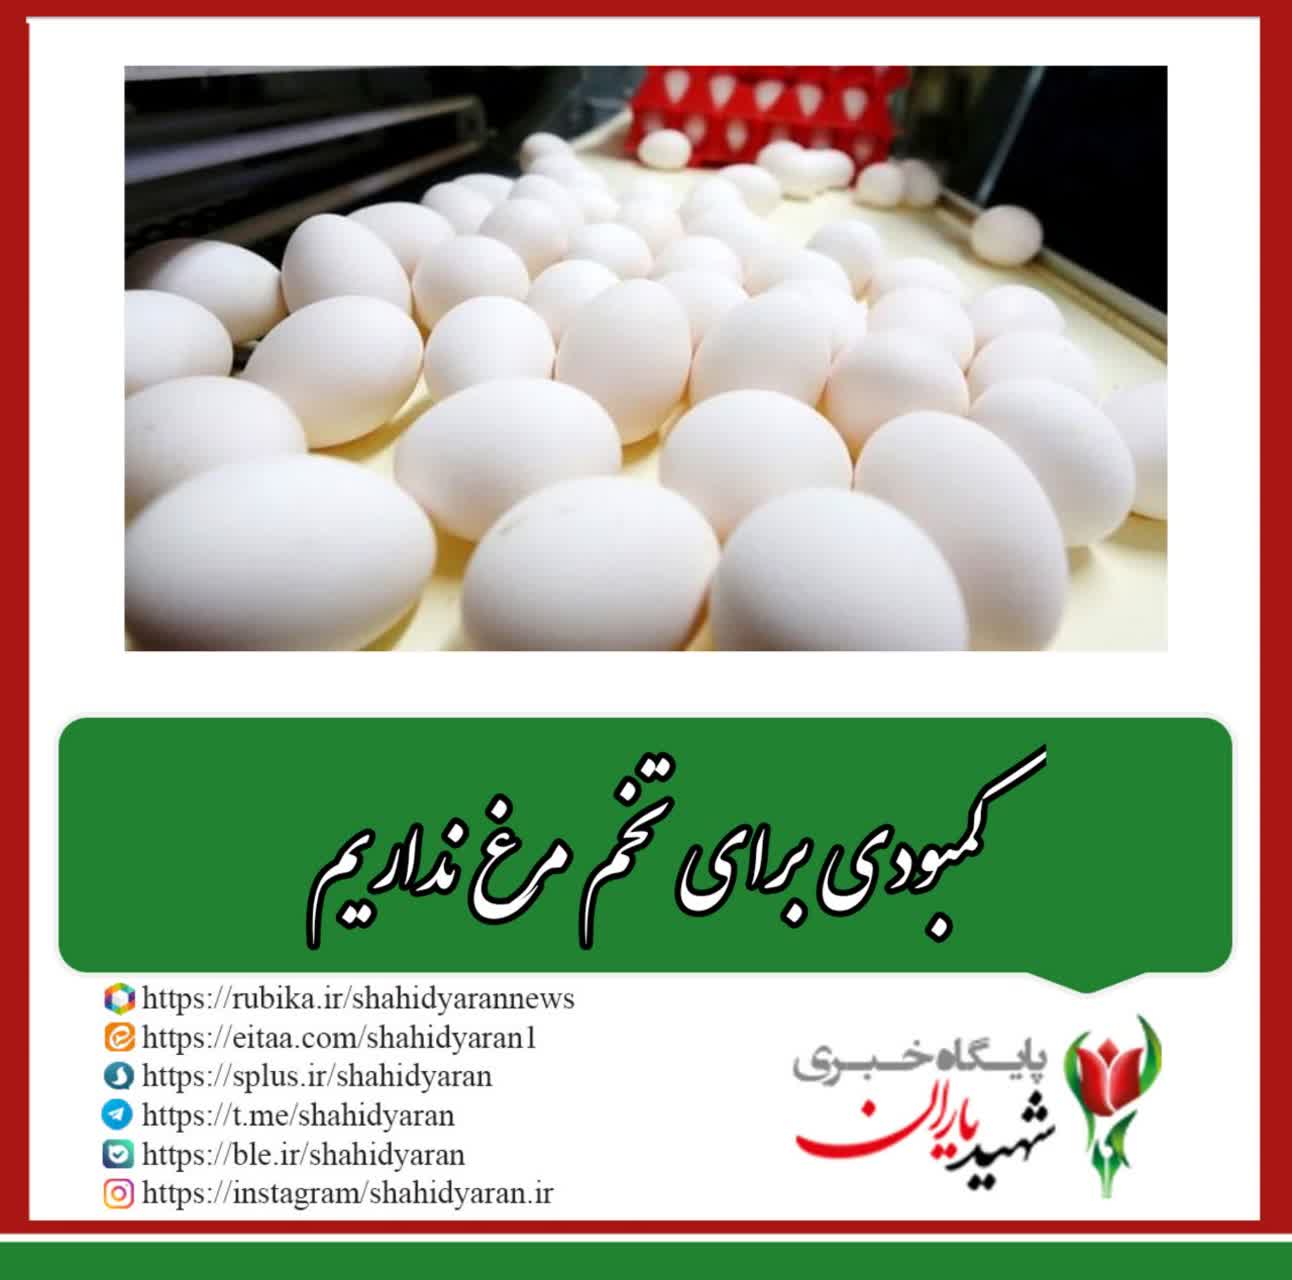 وزارت جهاد کشاورزی؛ کمبودی برای تخم مرغ نداریم